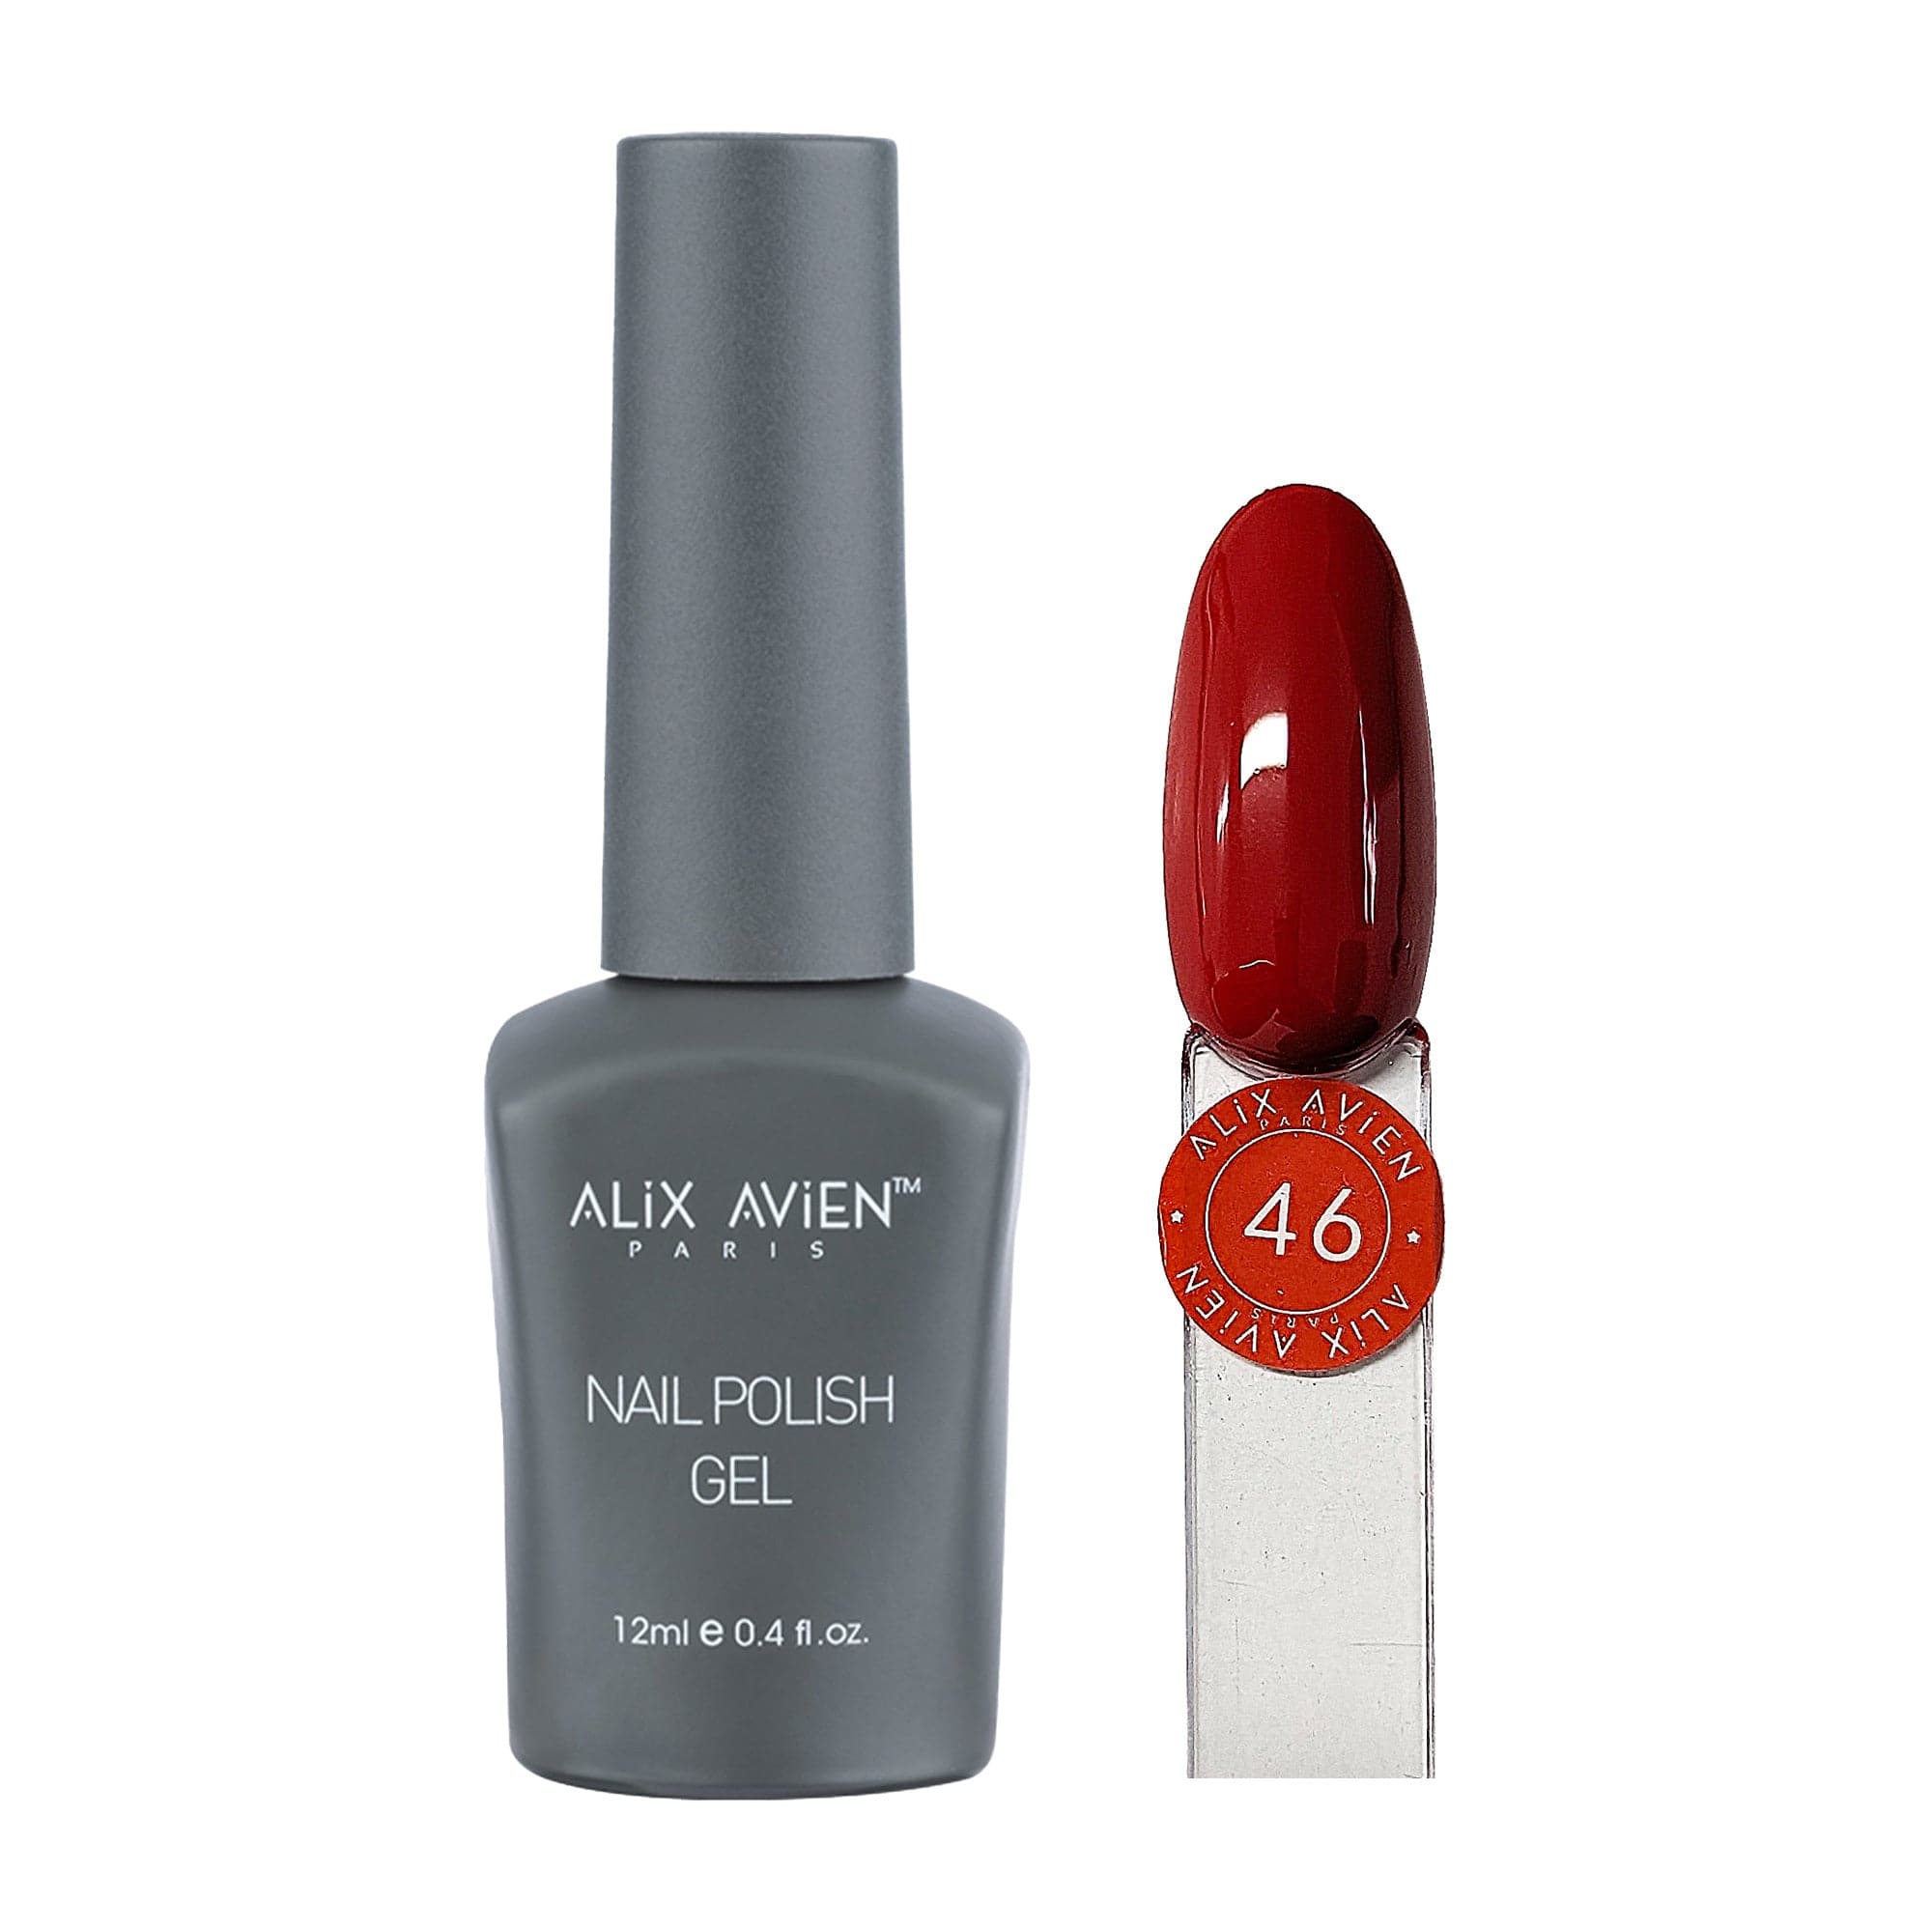 Alix Avien - Nail Polish Gel No.46 (Brick Red)